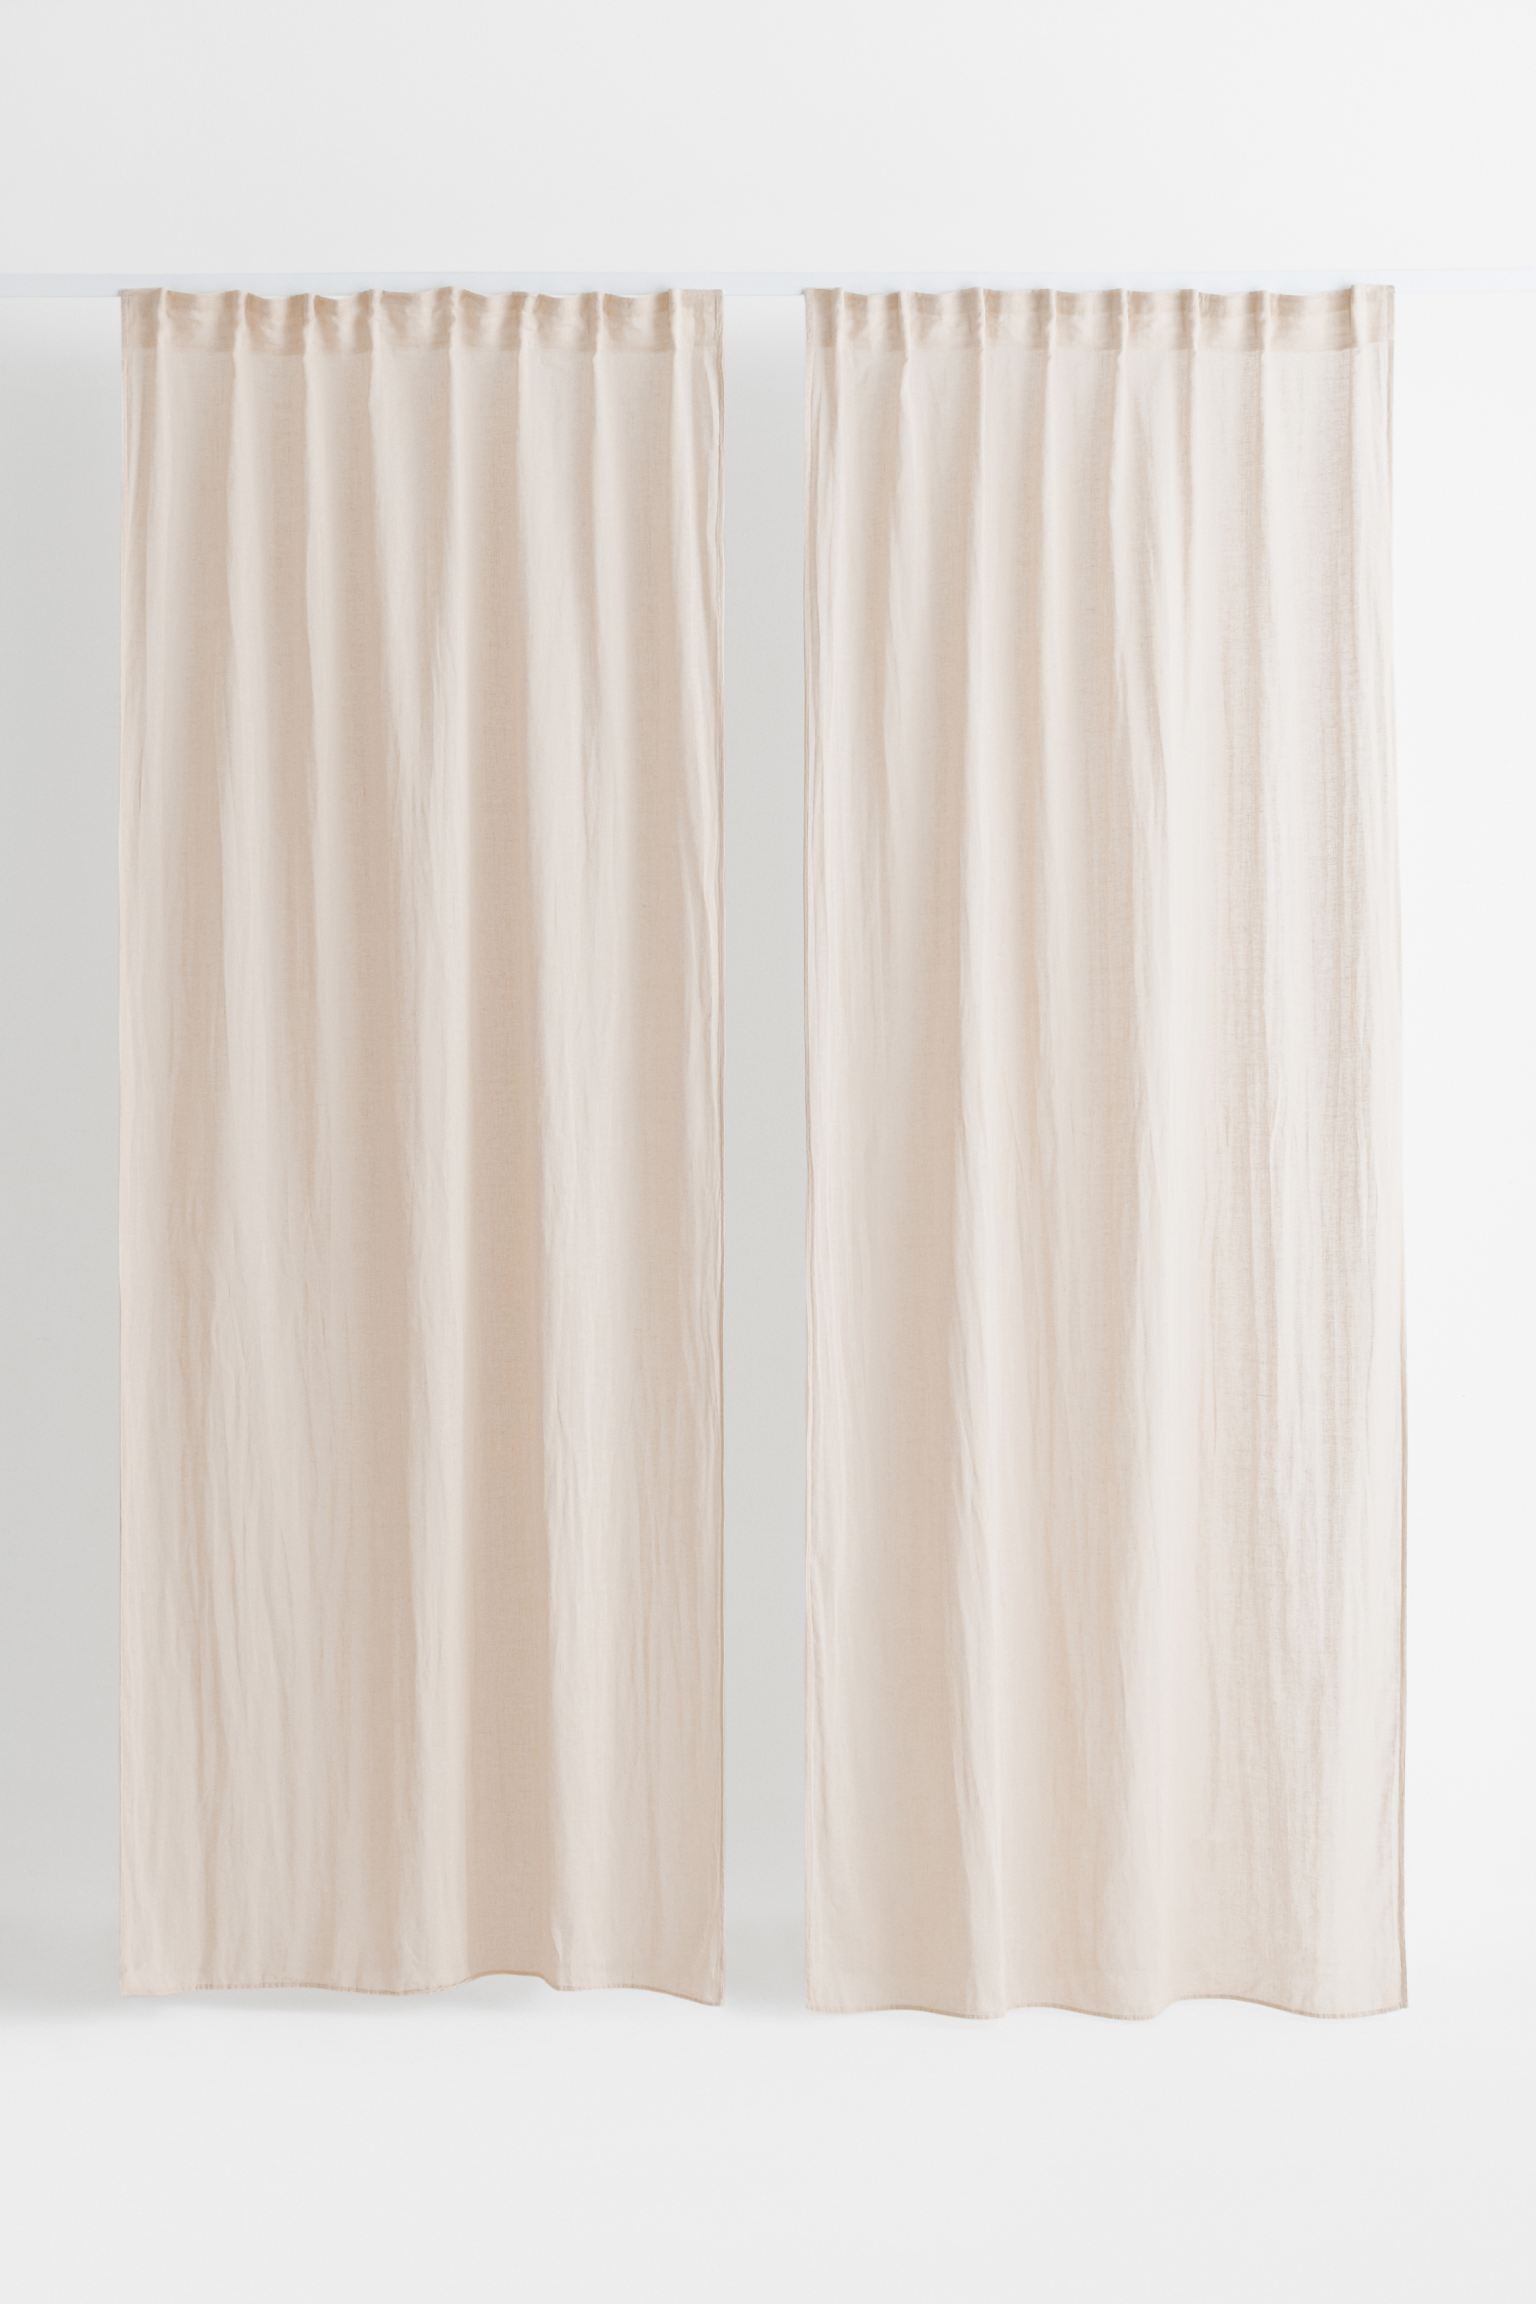 H&M Home Многофункциональная штора из смесовой льняной ткани, 2 шт., светло-бежевый, 120x250 1039973002 | 1039973002